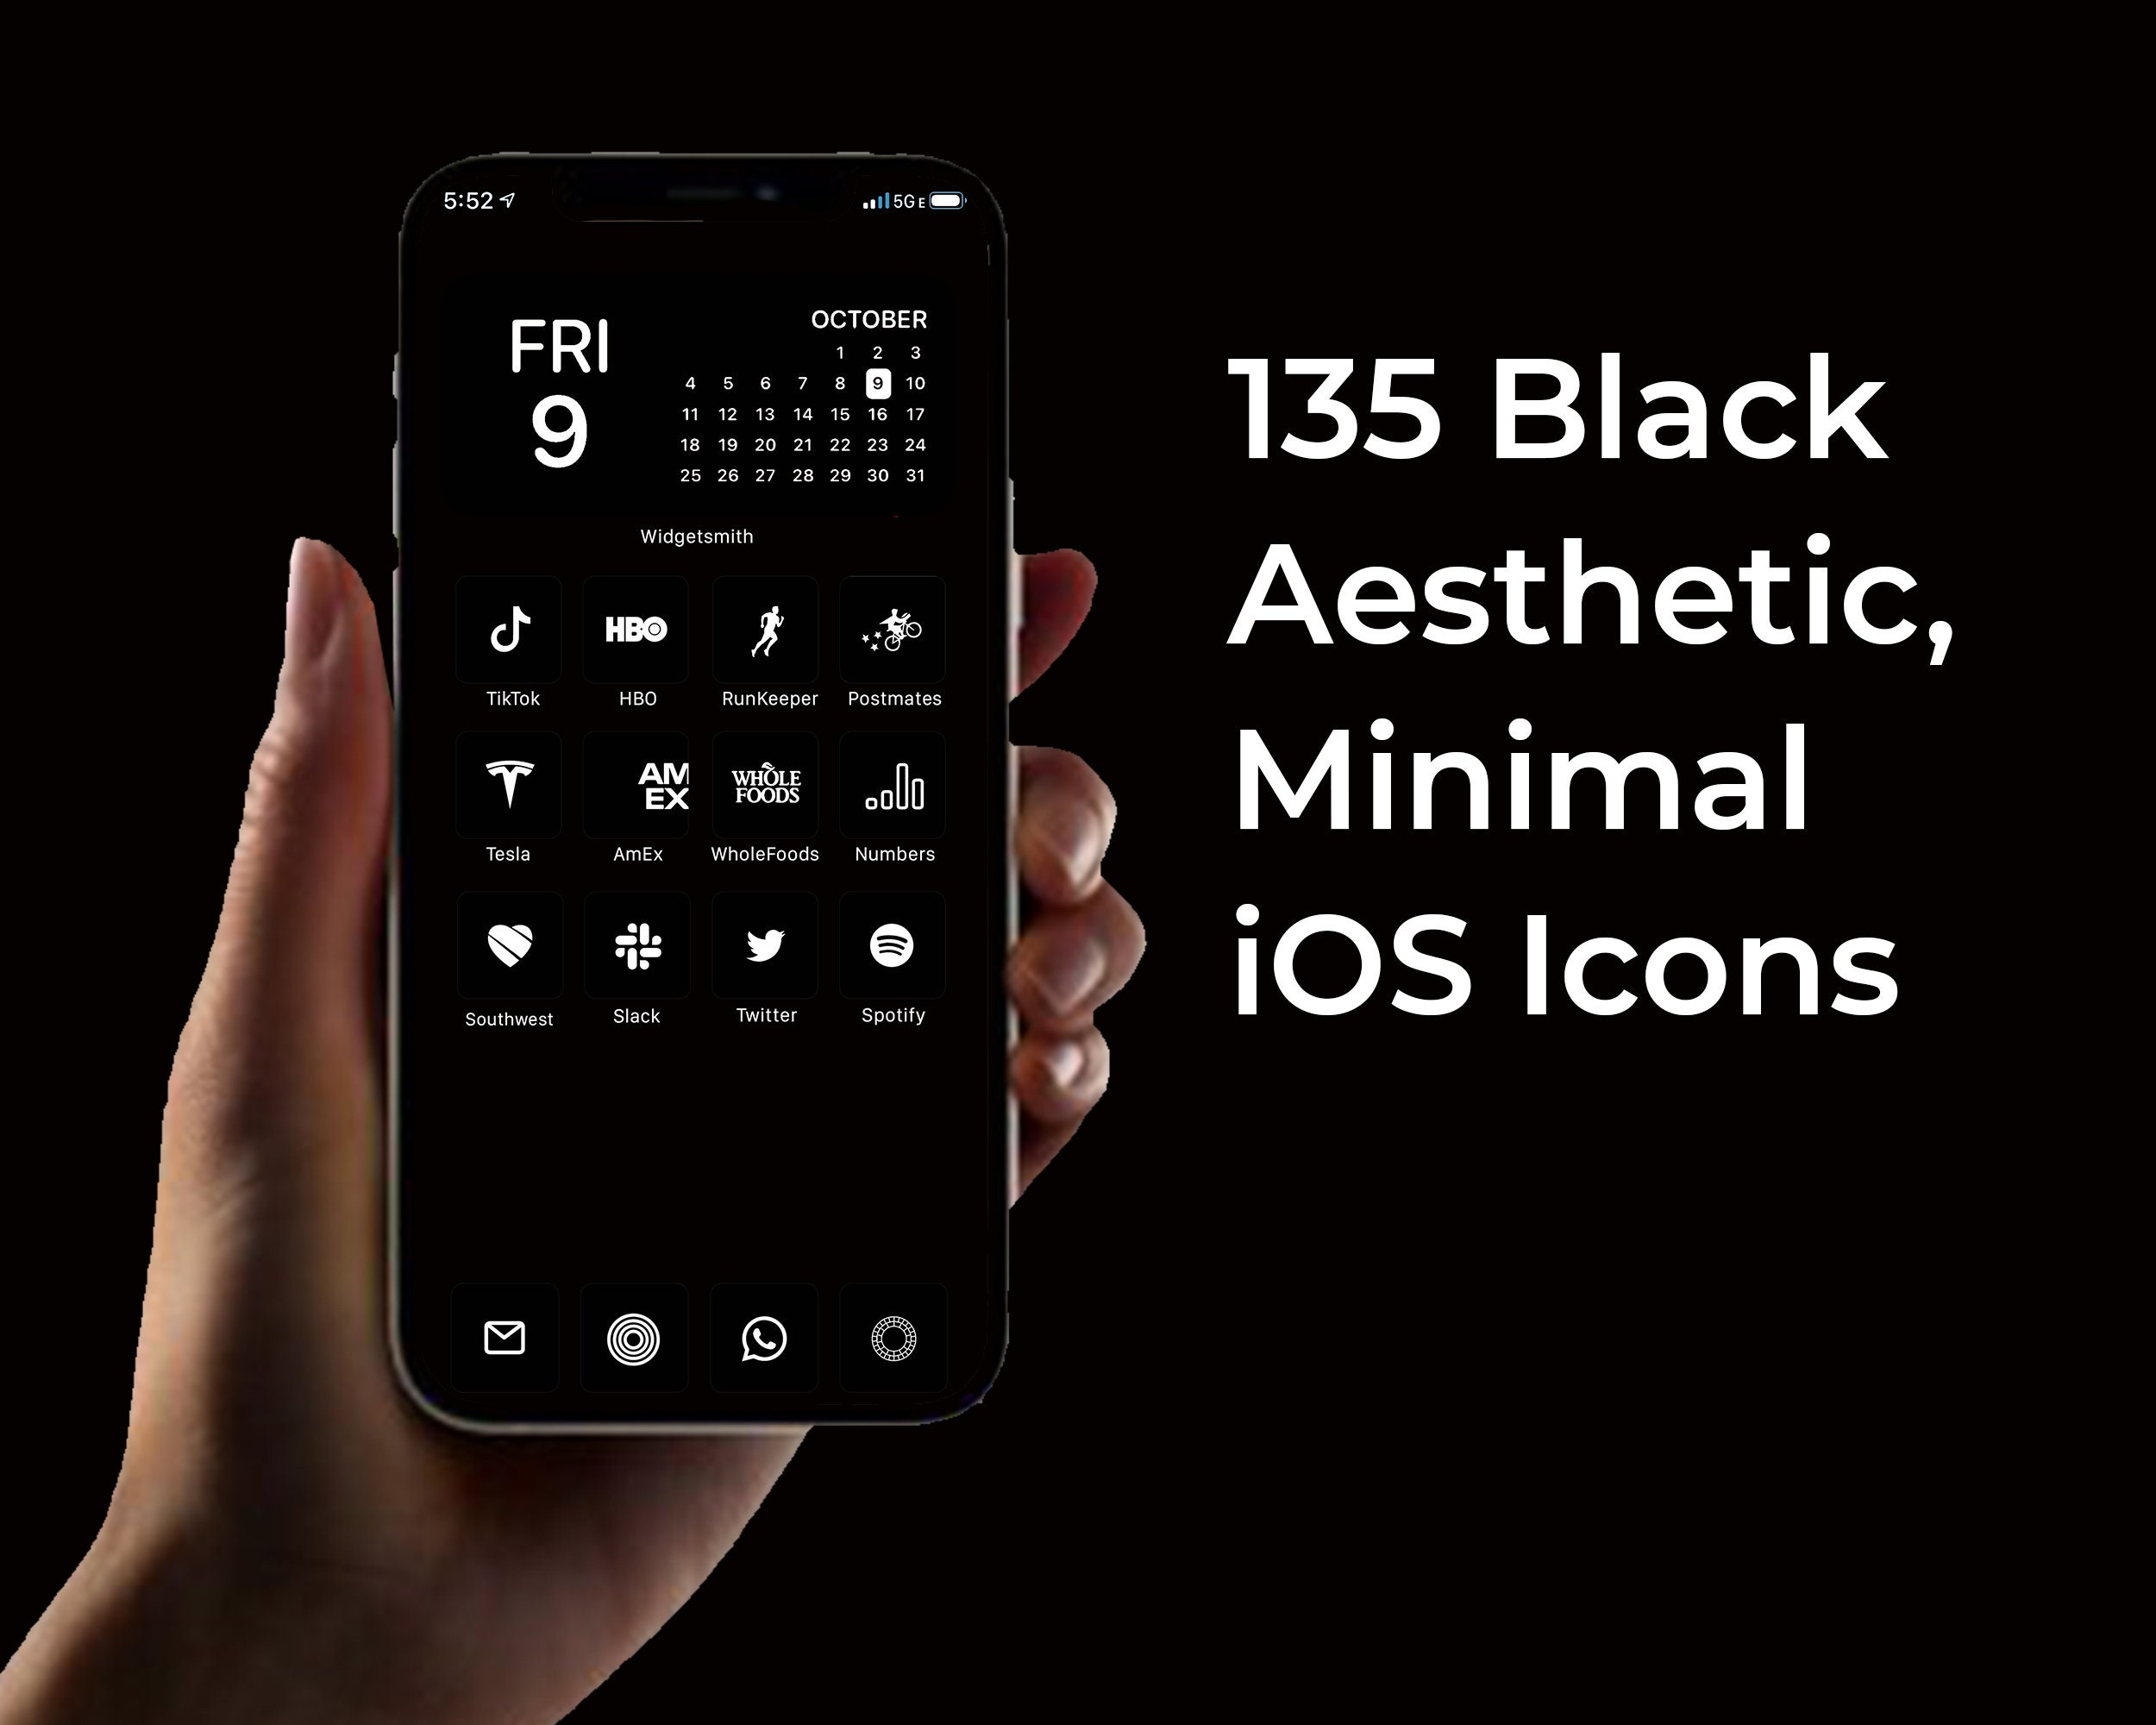 Đen luôn mang lại cho chúng ta cảm giác lịch lãm, sang trọng. Bộ biểu tượng iOS đen sang trọng chính là giải pháp hoàn hảo để bạn thể hiện phong cách thời thượng và tạo nên điểm nhấn độc đáo cho điện thoại của bạn. Tìm hiểu thêm và trang trí điện thoại của bạn với bộ biểu tượng đỉnh cao này. 